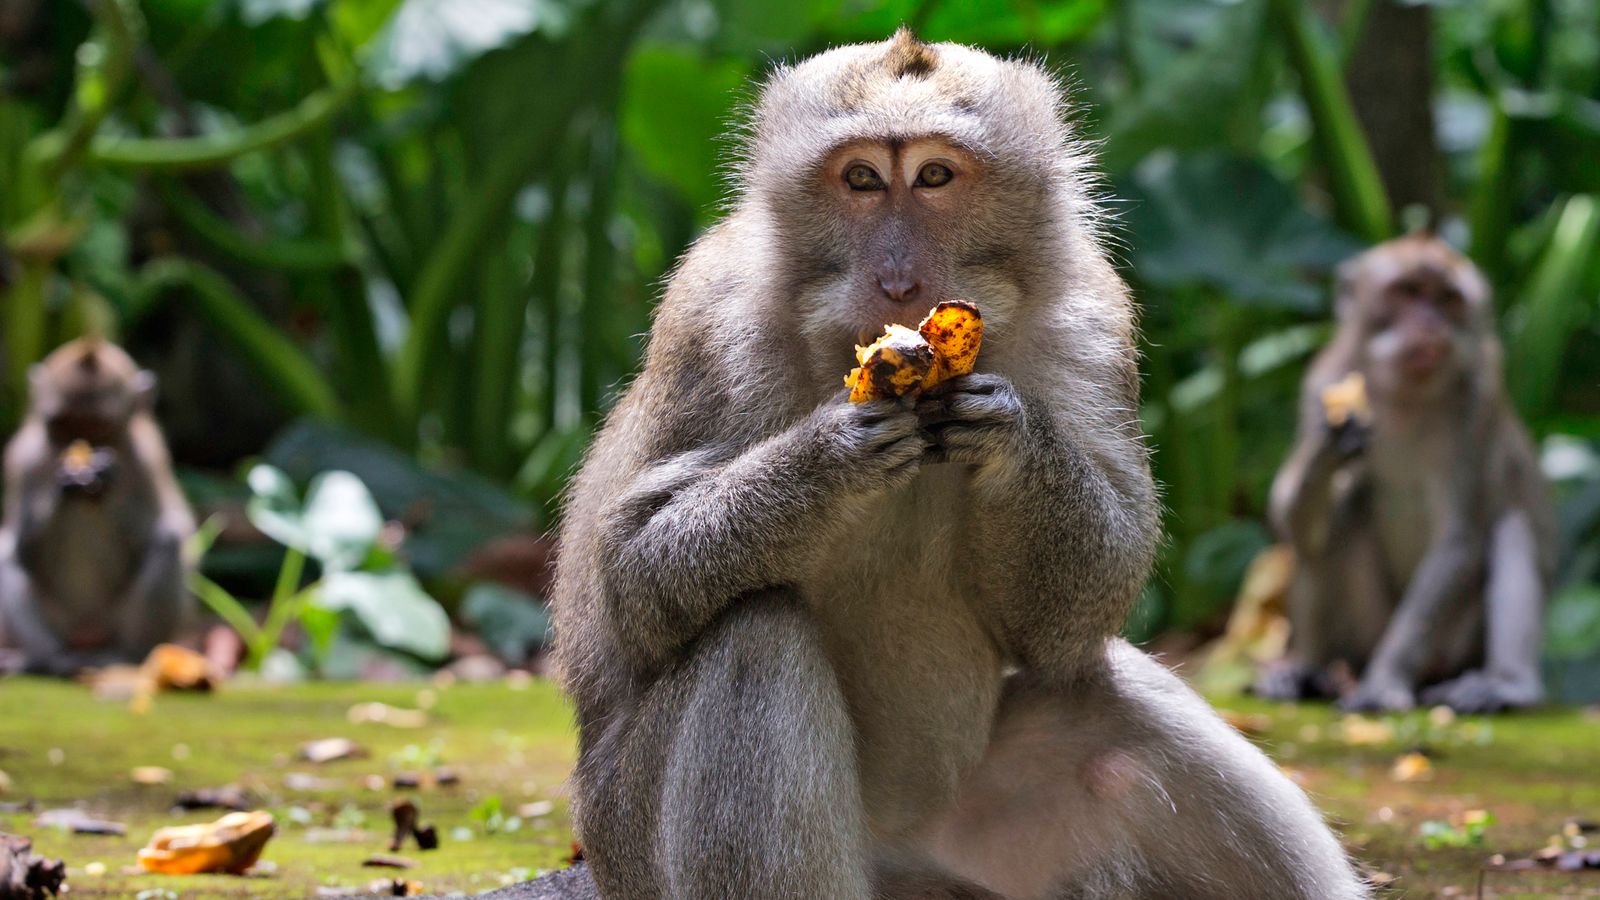 Hãy xem bức ảnh về Khỉ đột đáng yêu này, chúng sẽ khiến bạn cảm thấy vui vẻ và thư giãn. Khỉ đột là loài động vật rất thông minh và nghịch ngợm, chắc chắn sẽ khiến bạn cười thích thú.